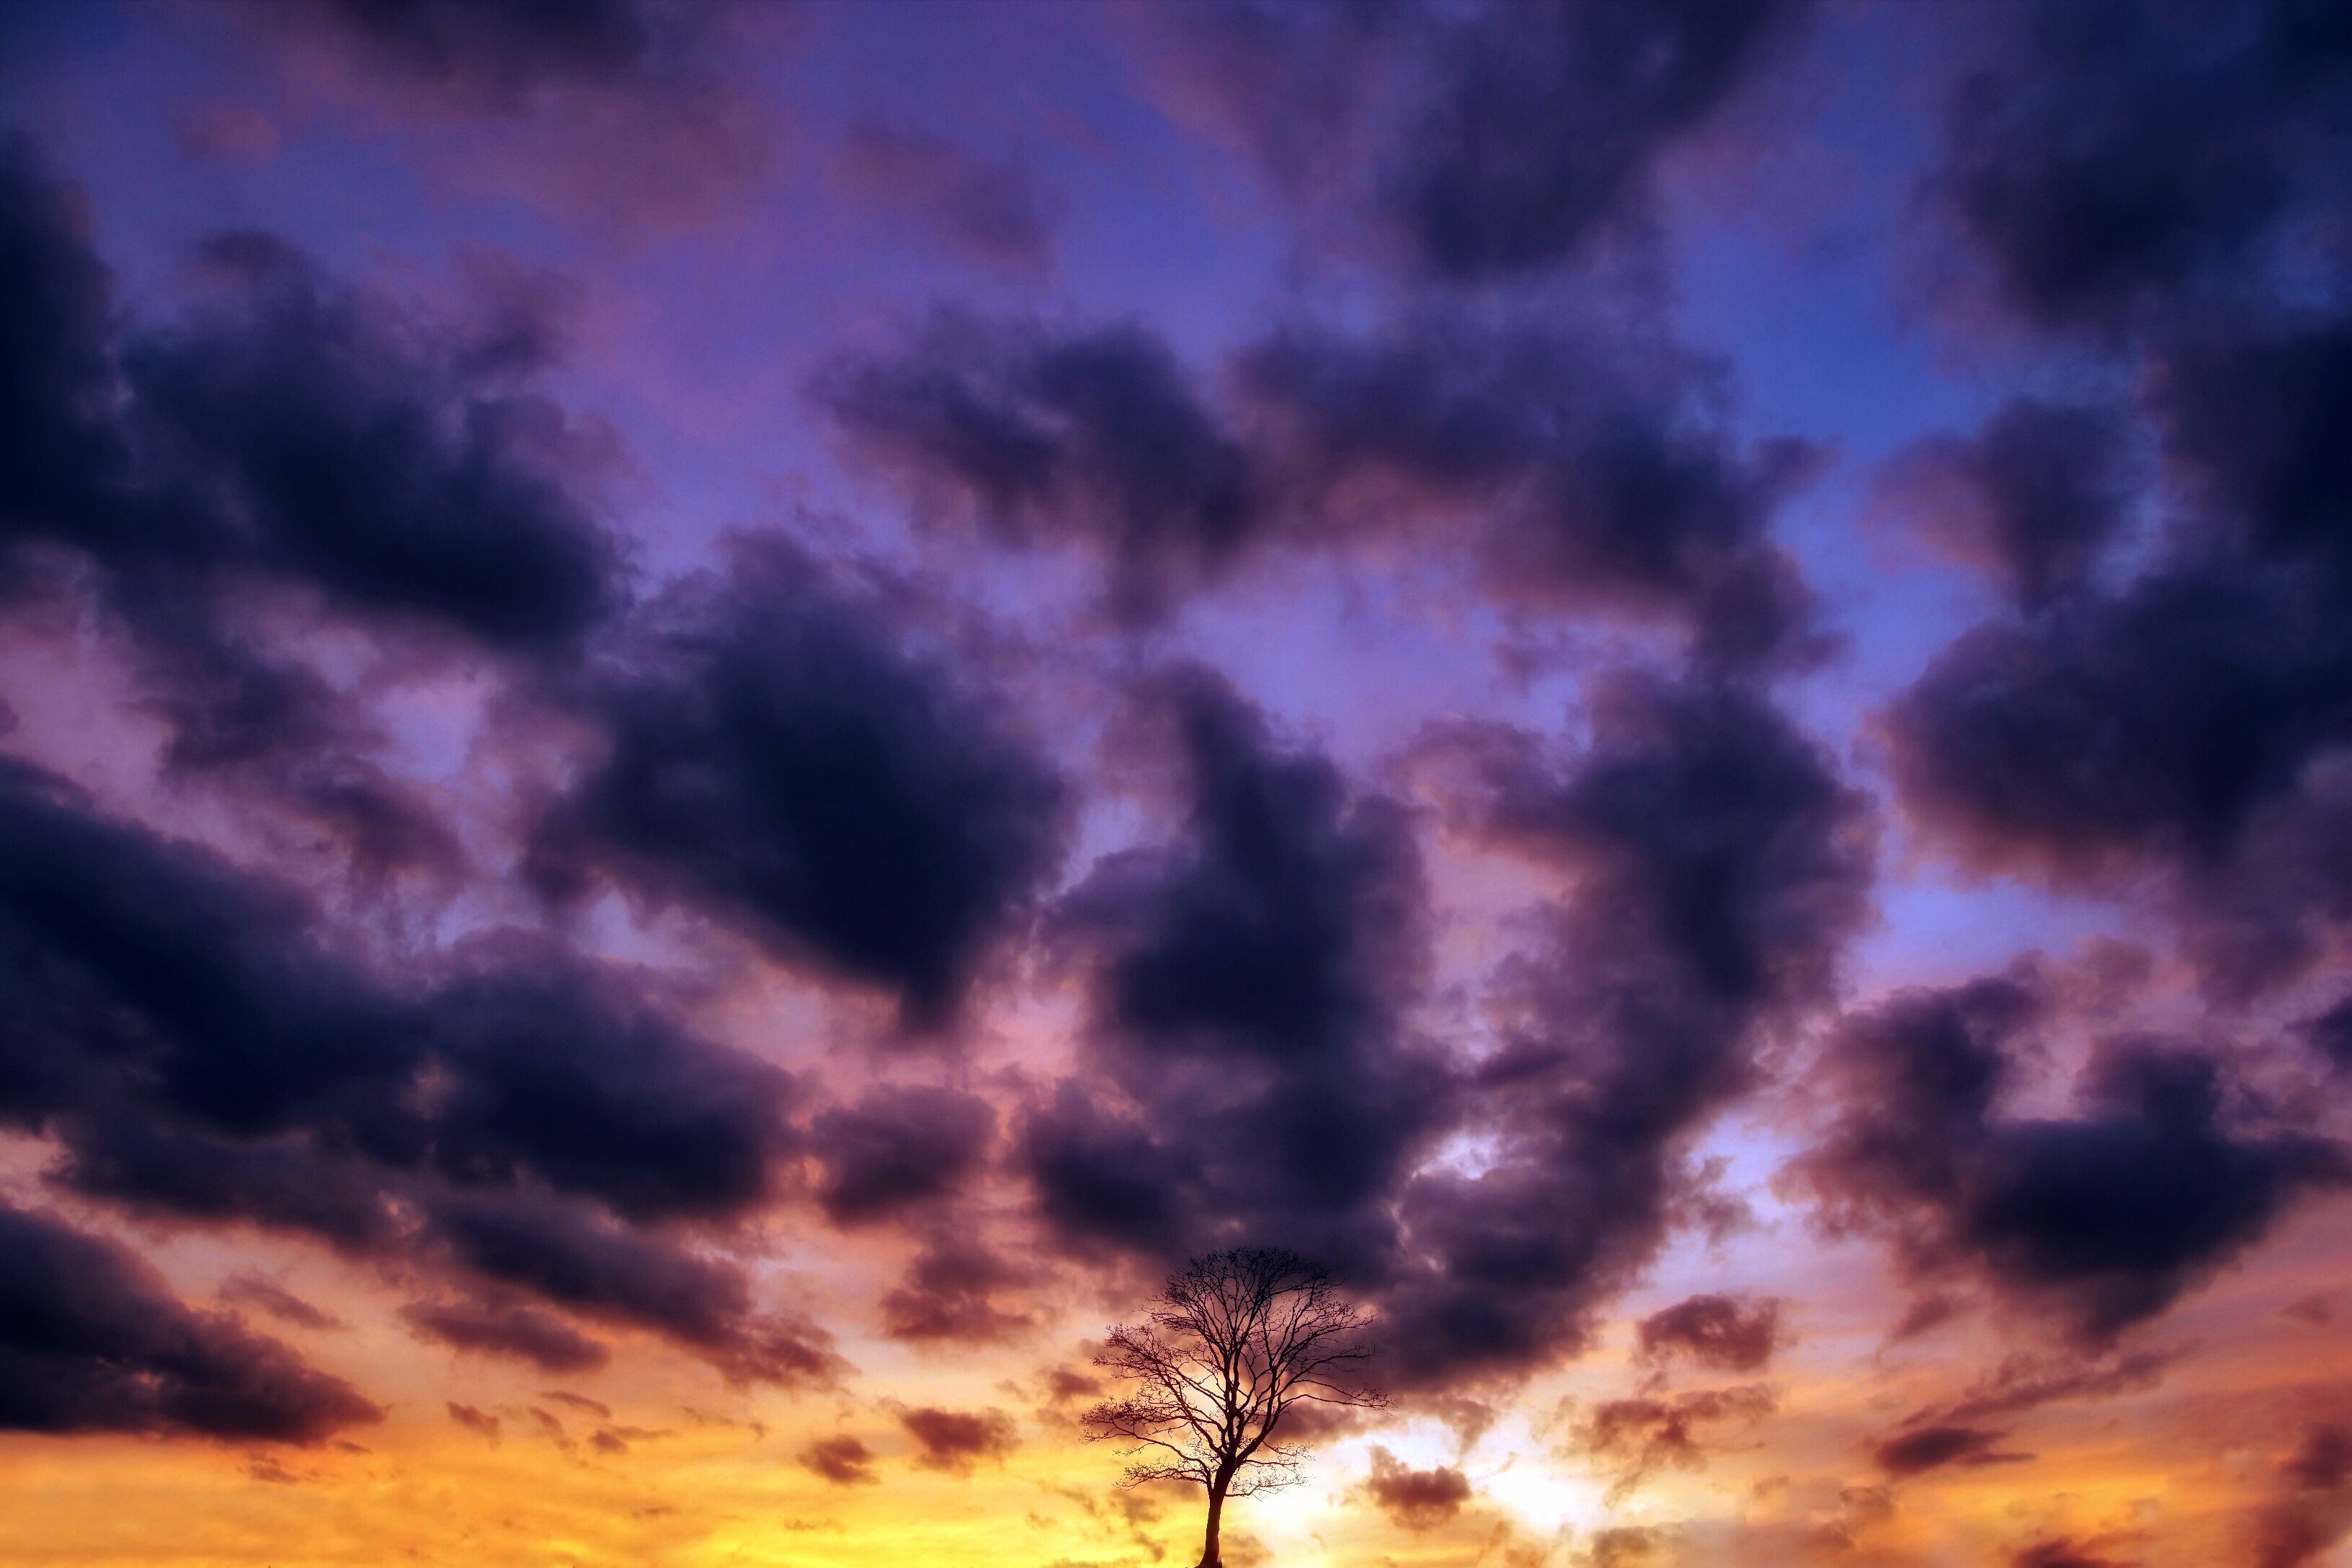 Скачать обои бесплатно Природа, Закат, Небо, Облака, Дерево, Пурпурный, Земля/природа, Одинокое Дерево картинка на рабочий стол ПК